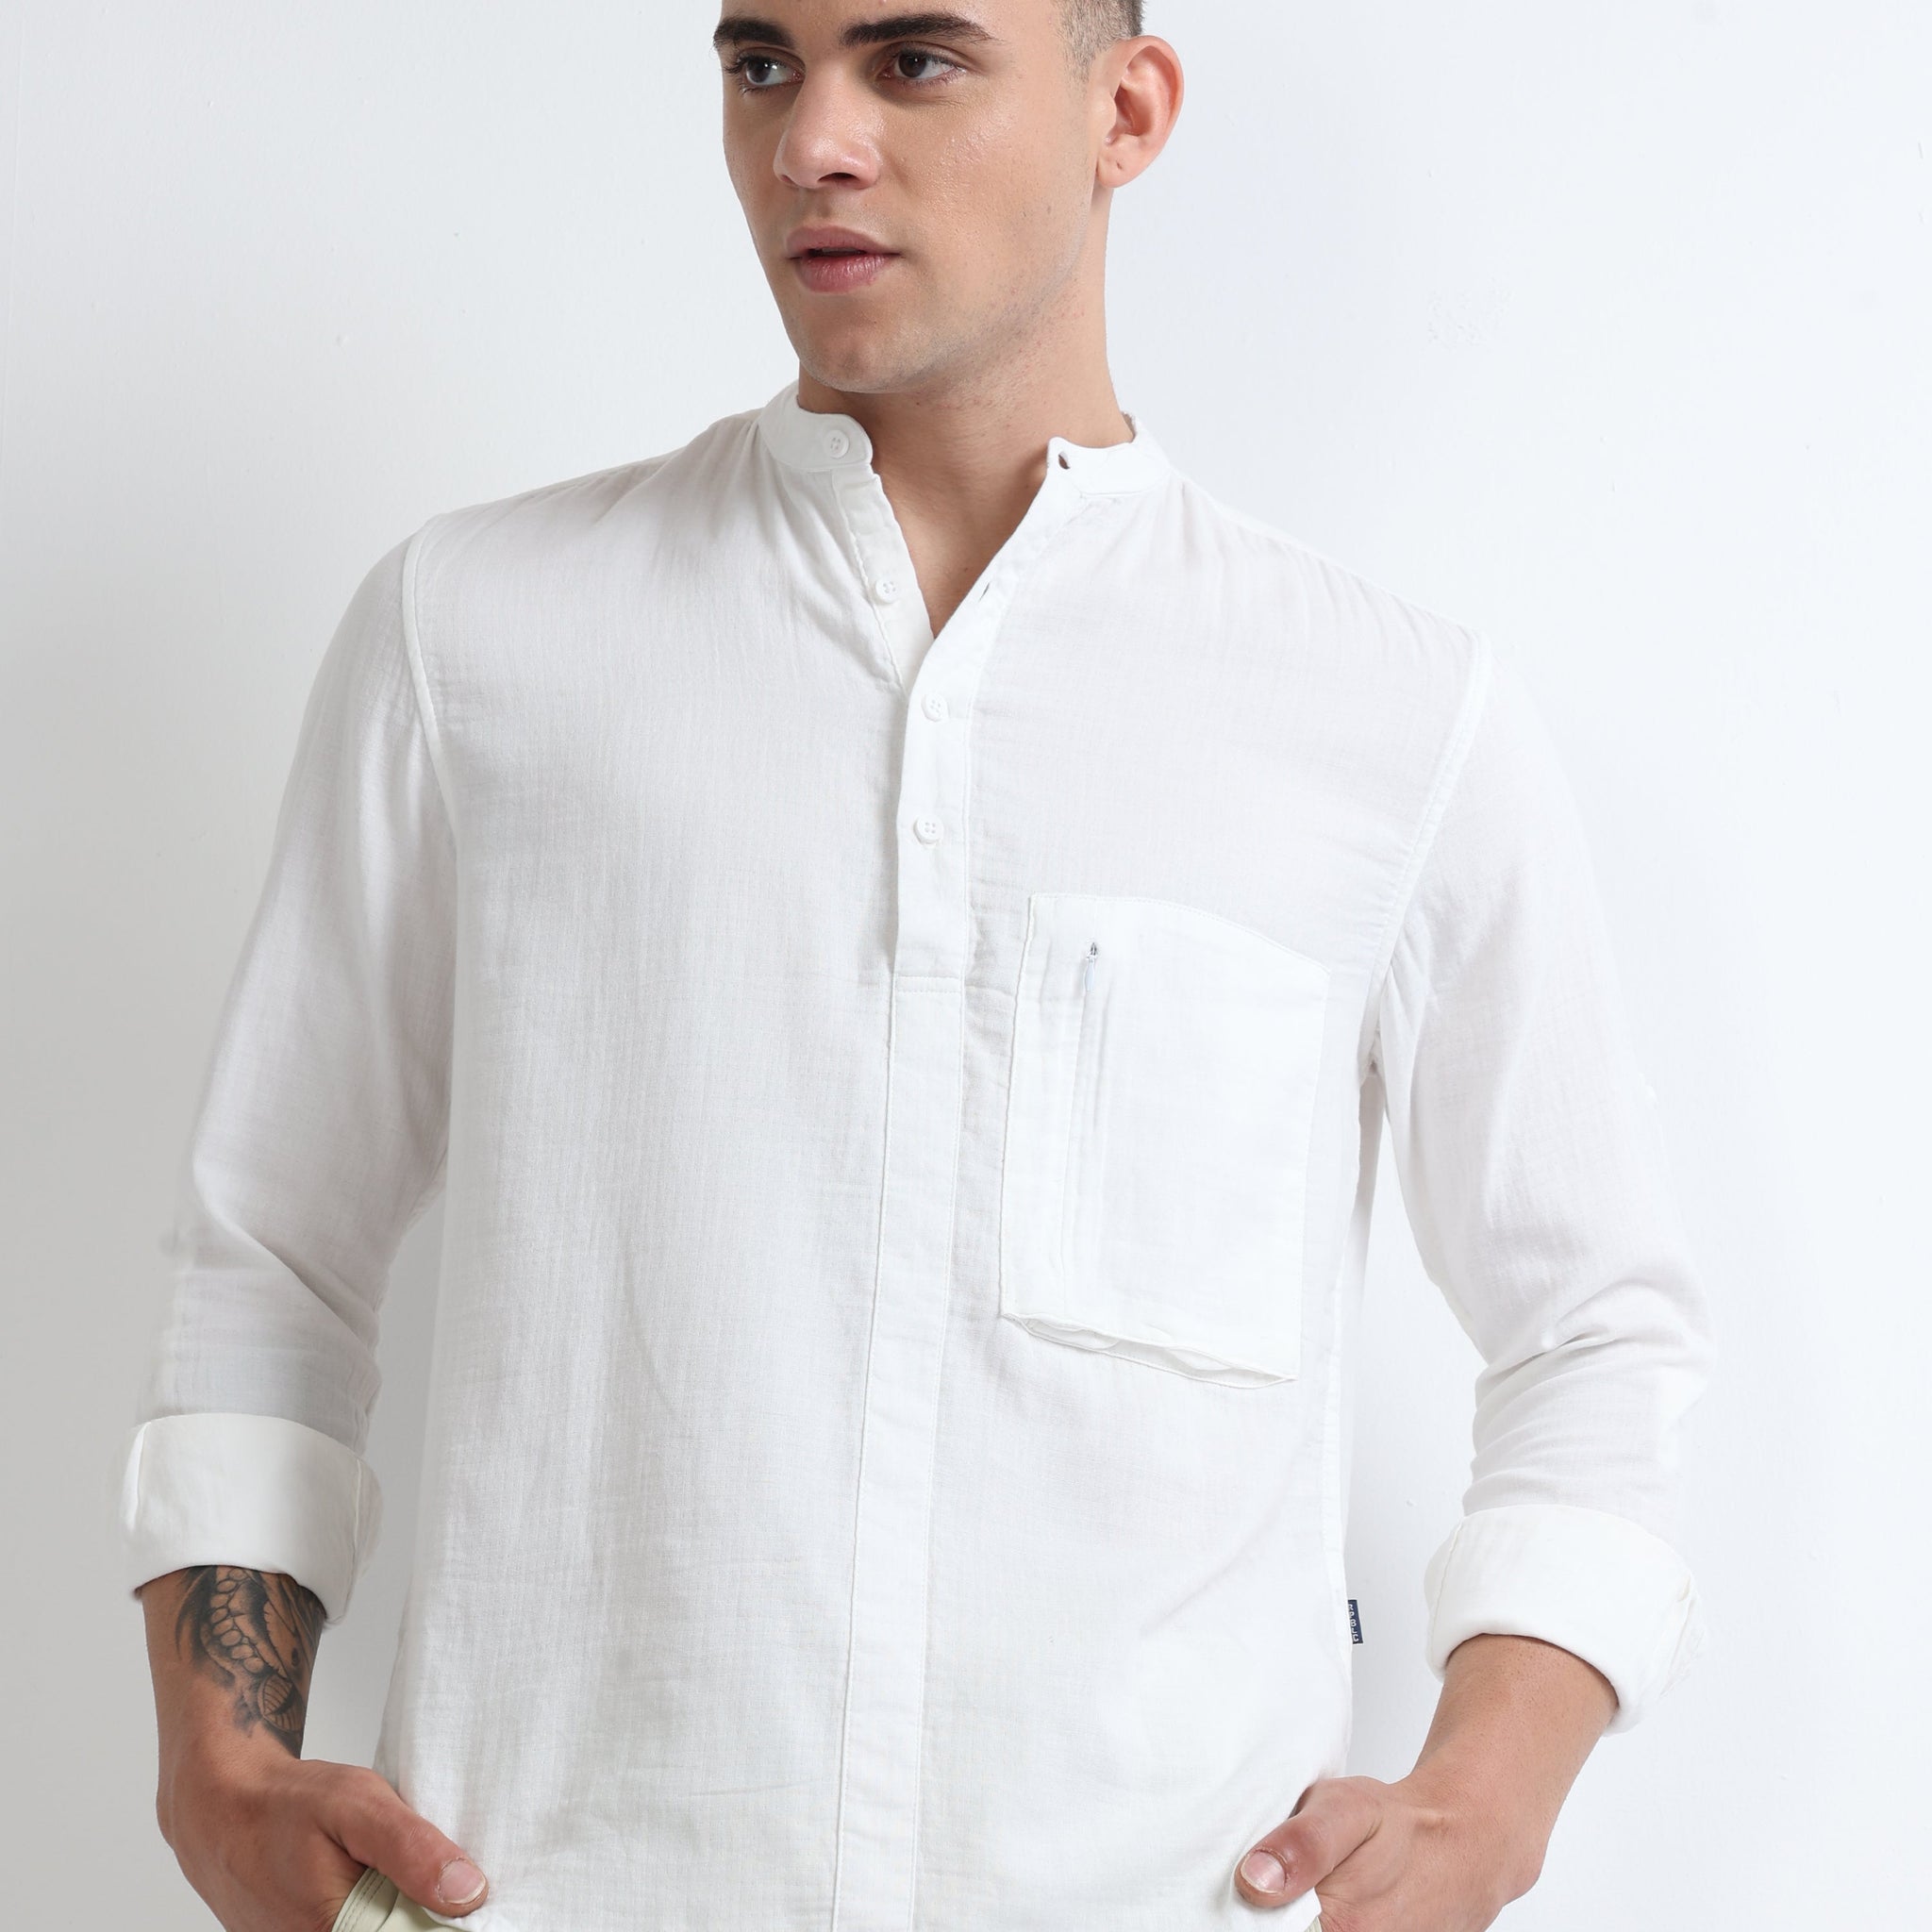 White Men's Chinese Collar Brushed Stylish Plain Shirt